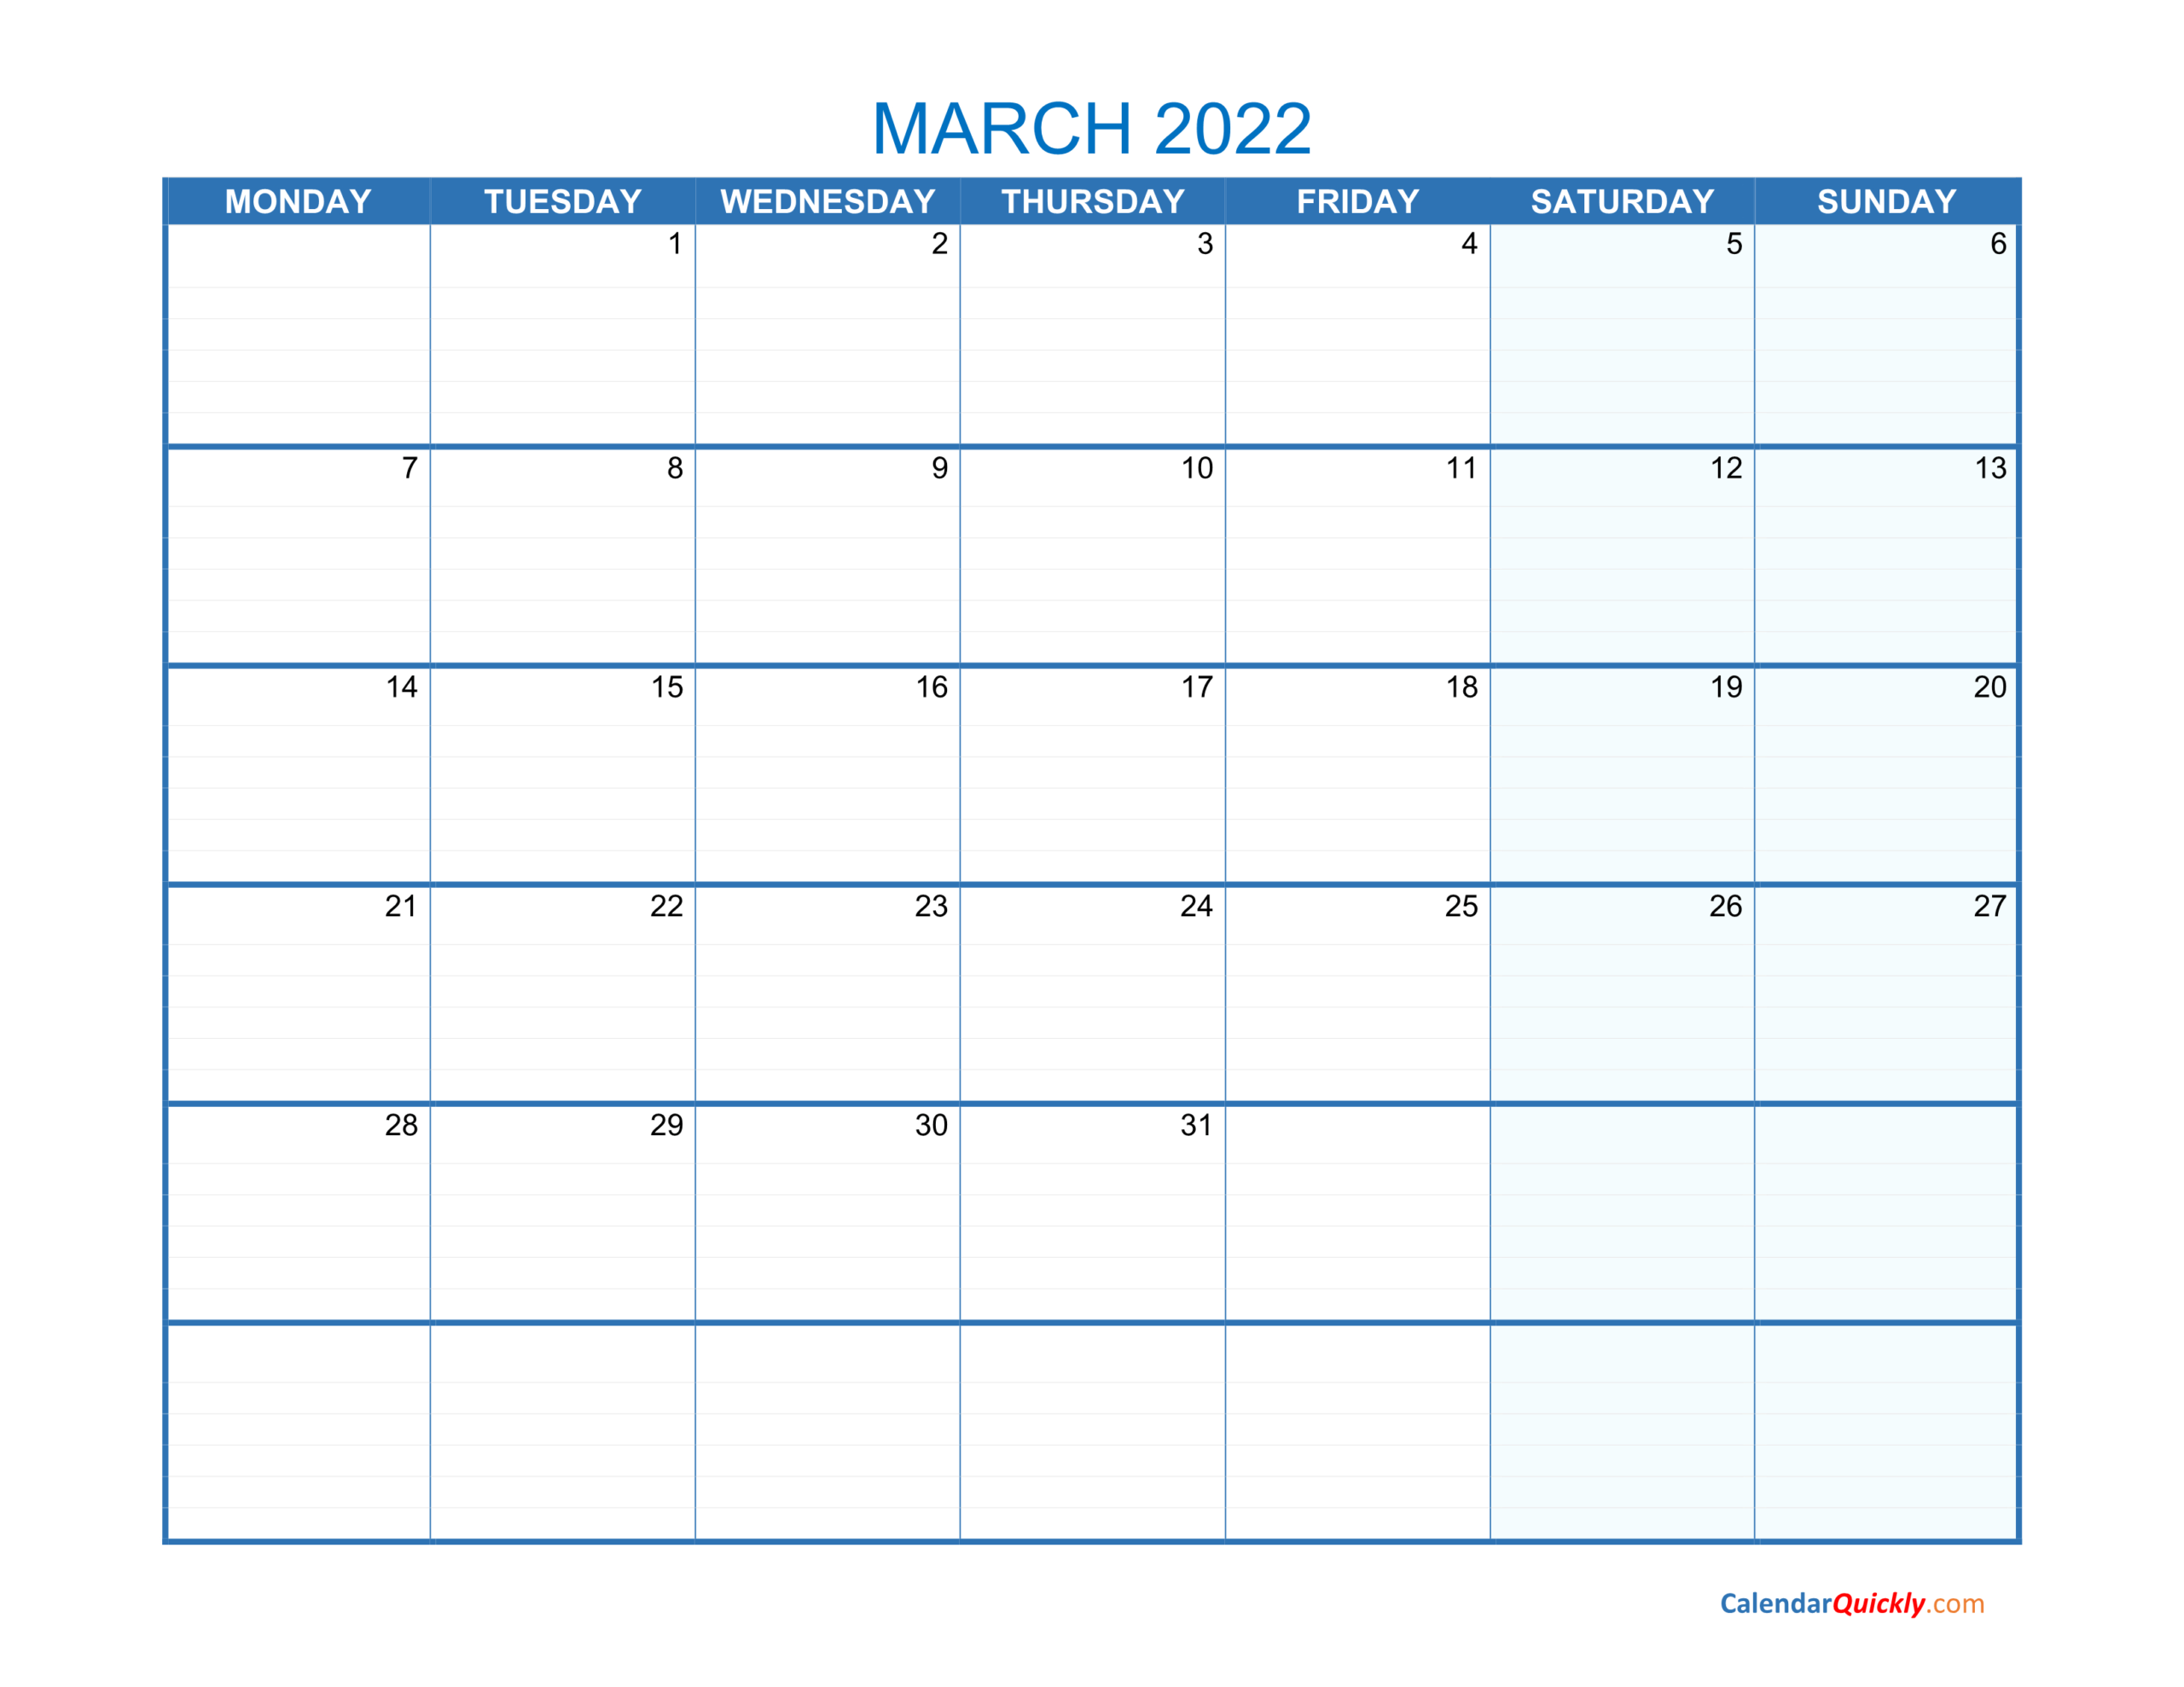 March Monday 2022 Blank Calendar | Calendar Quickly